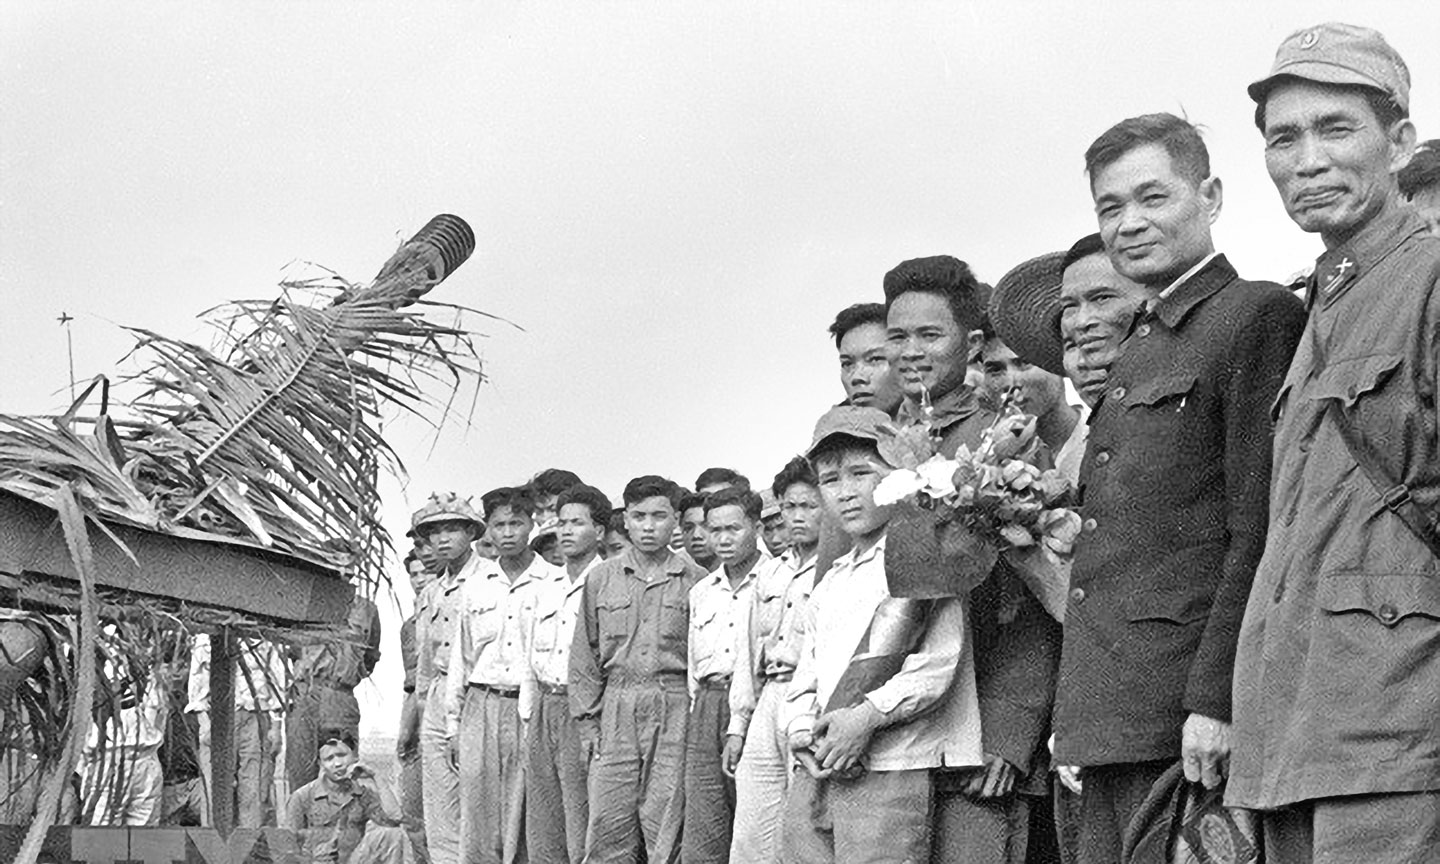 Đồng chí Lê Văn Lương (thứ 2 từ phải sang) đến thăm một đơn vị pháo cao xạ bảo vệ cầu Hàm Rồng, Thanh Hóa năm 1968. Ảnh tư liệu của TTXVN